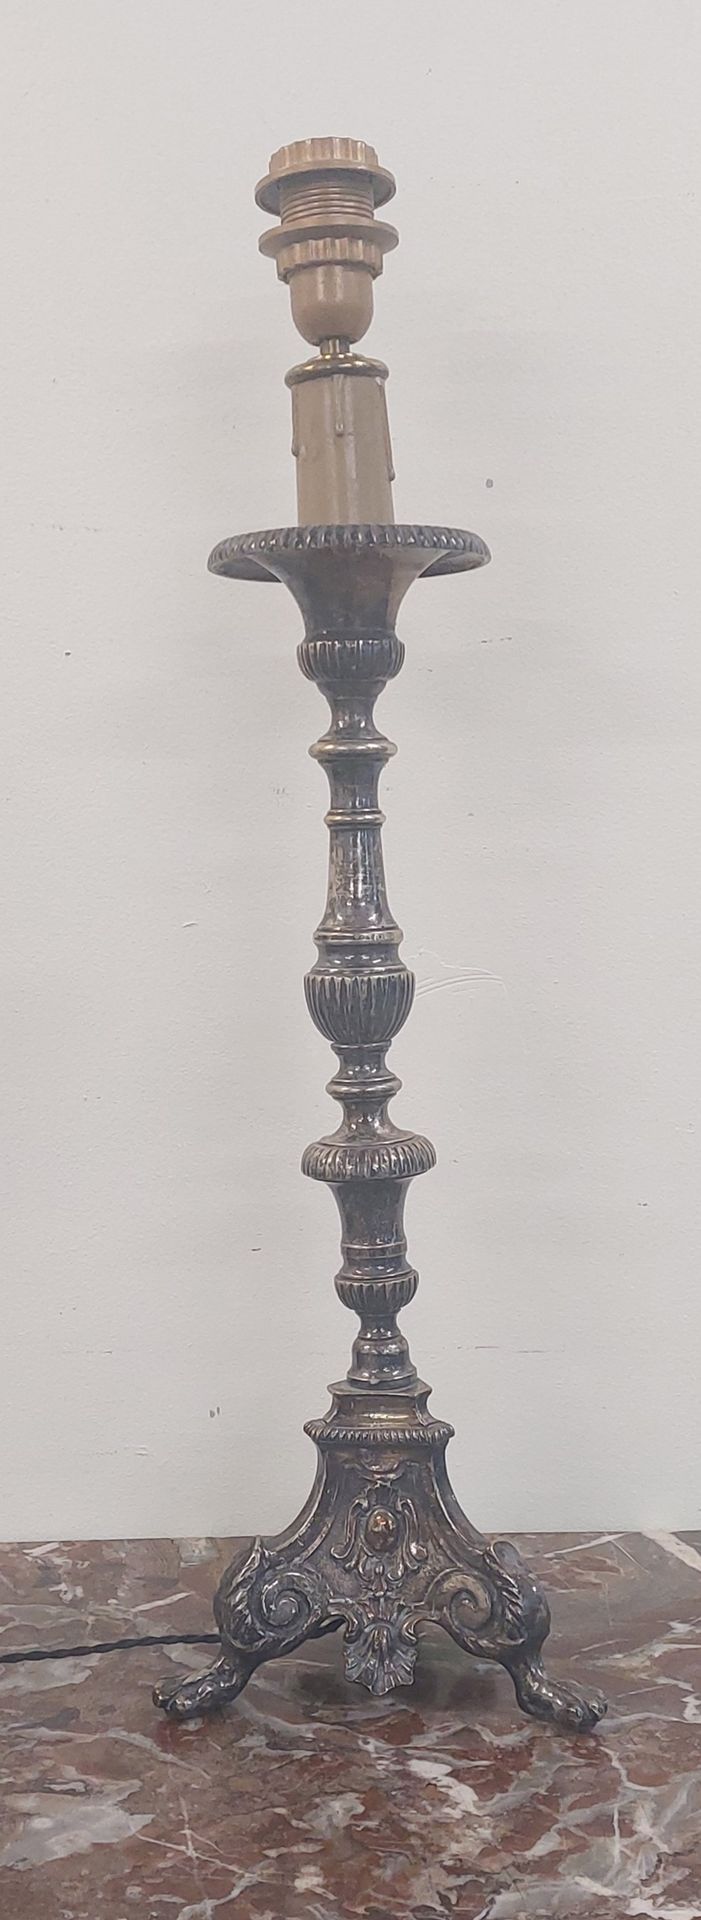 Null PIQUE-CIERGE en bronze argenté monté en lampe

H totale : 67 cm